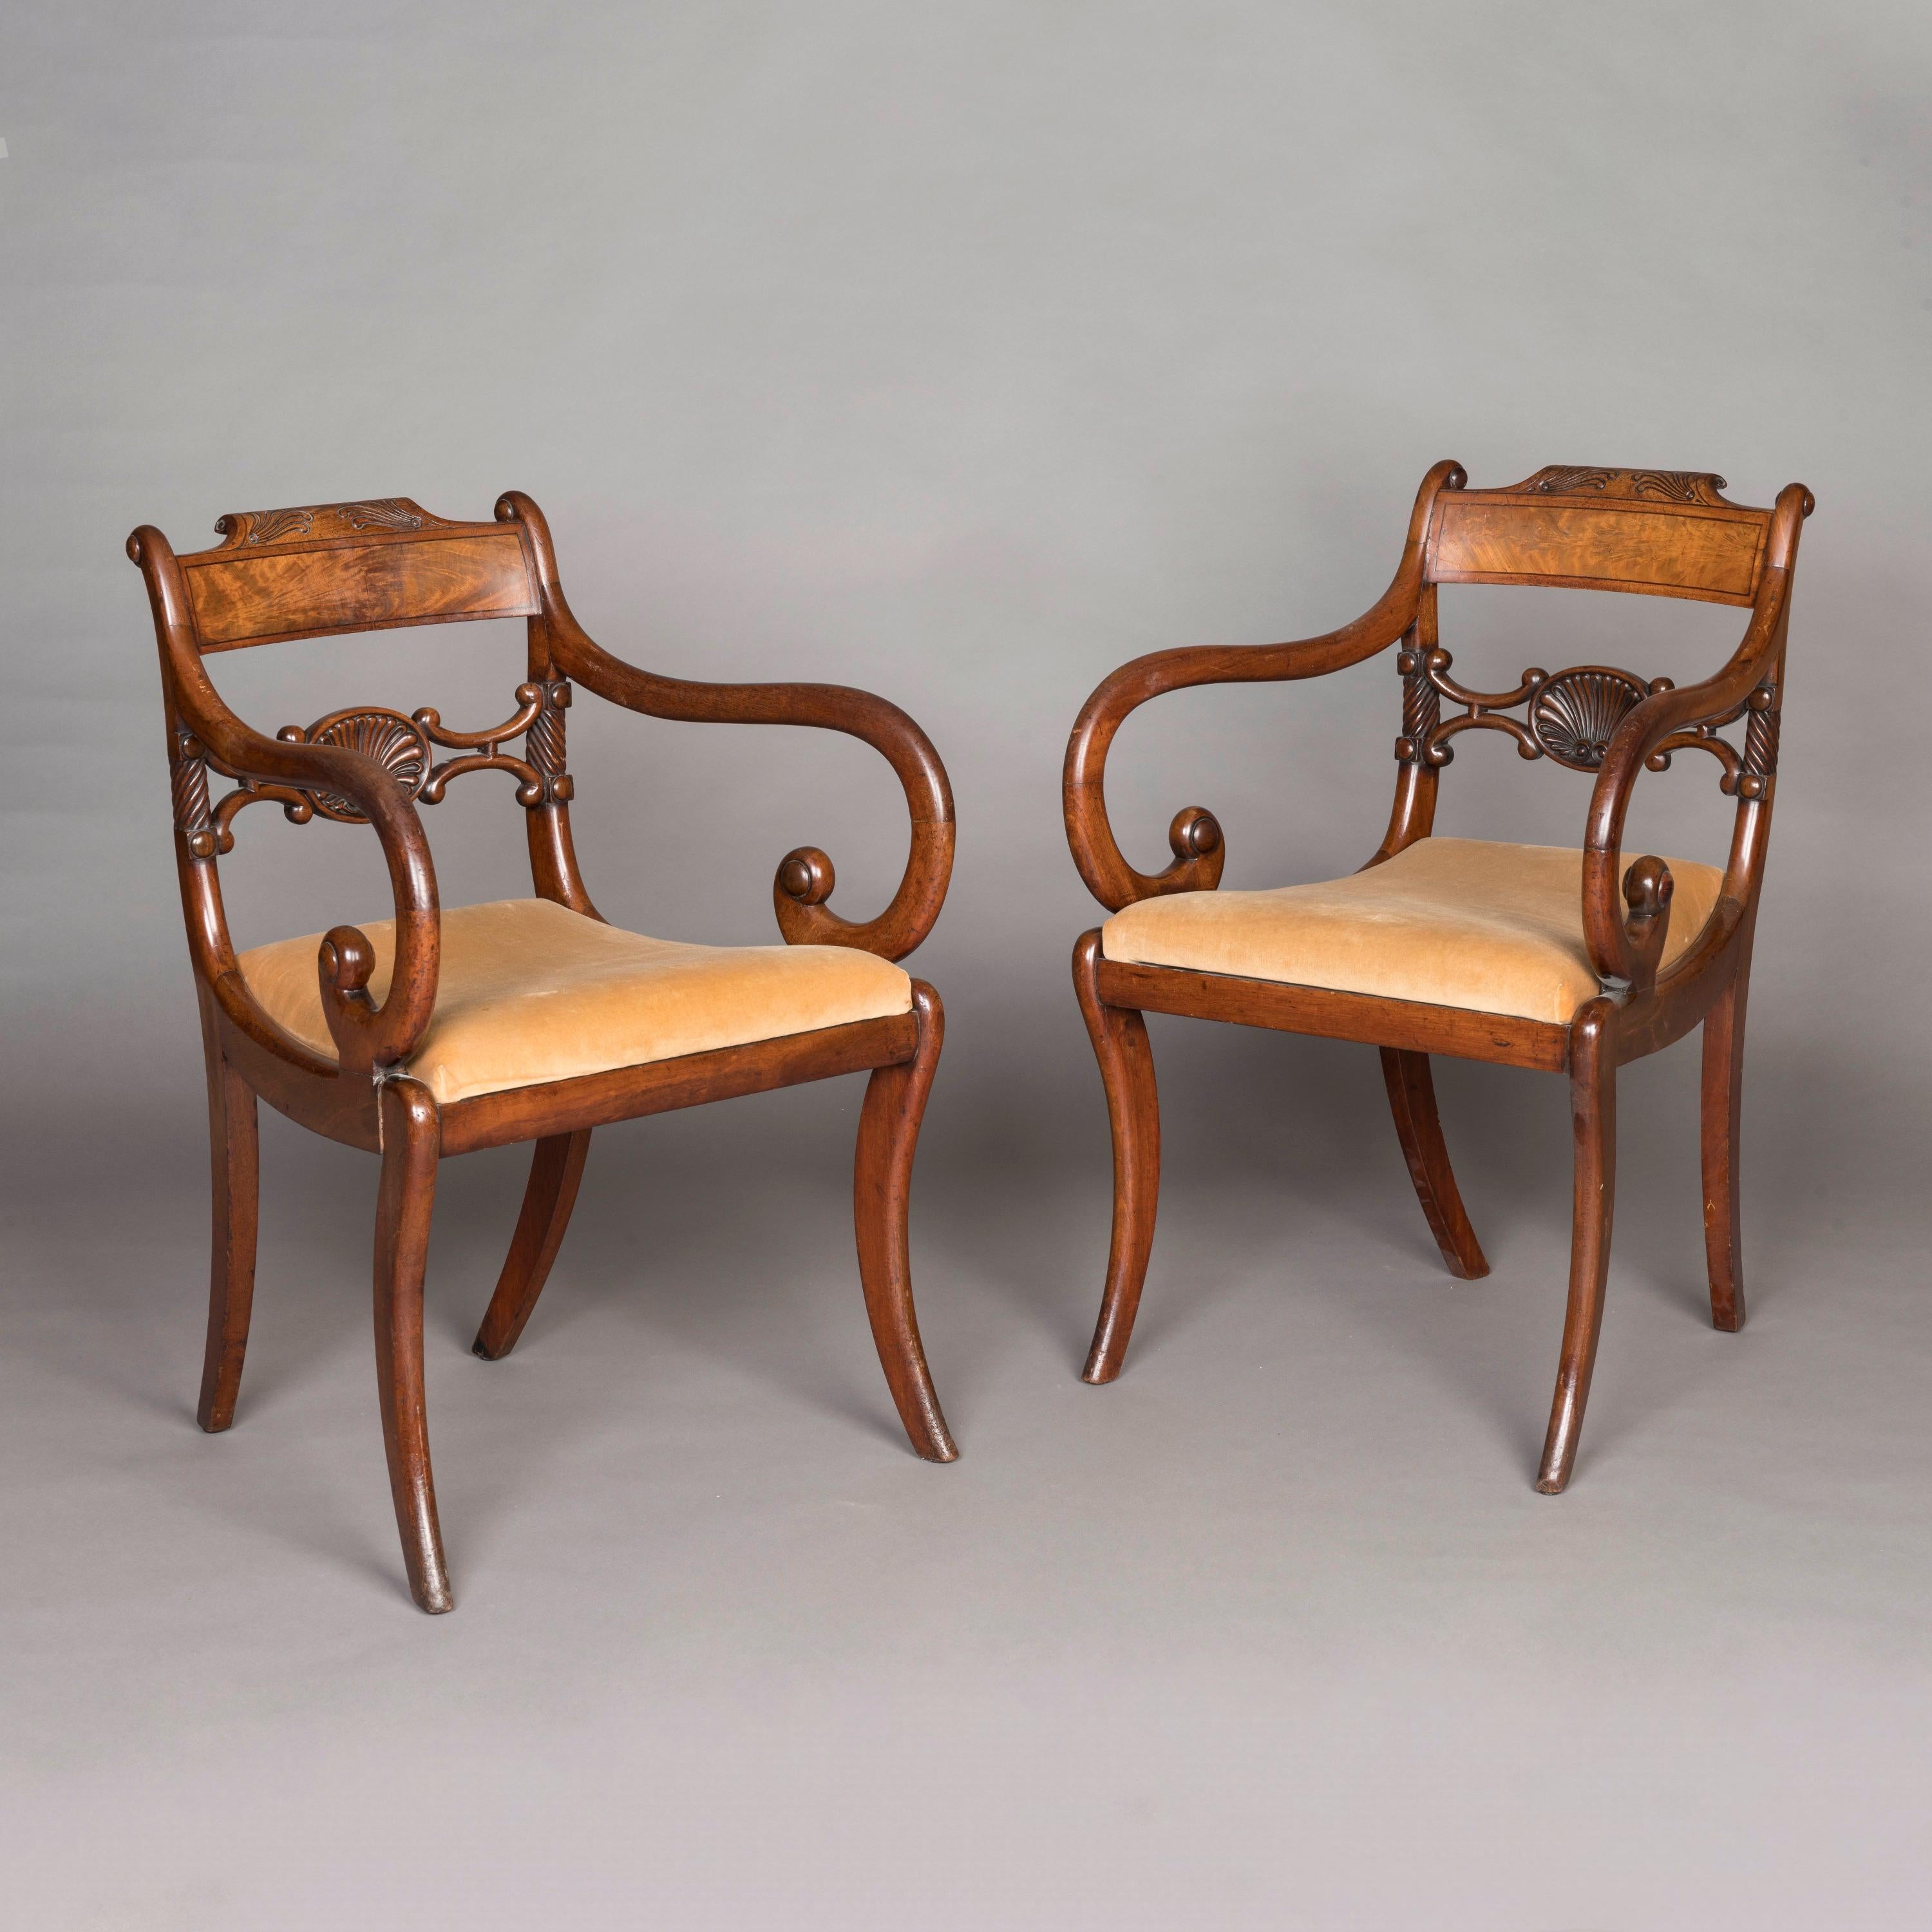 Ein Paar eleganter Regency-Sessel

Aus Mahagoni gefertigt, auf säbelförmigen Vorderbeinen stehend, mit kühnem 